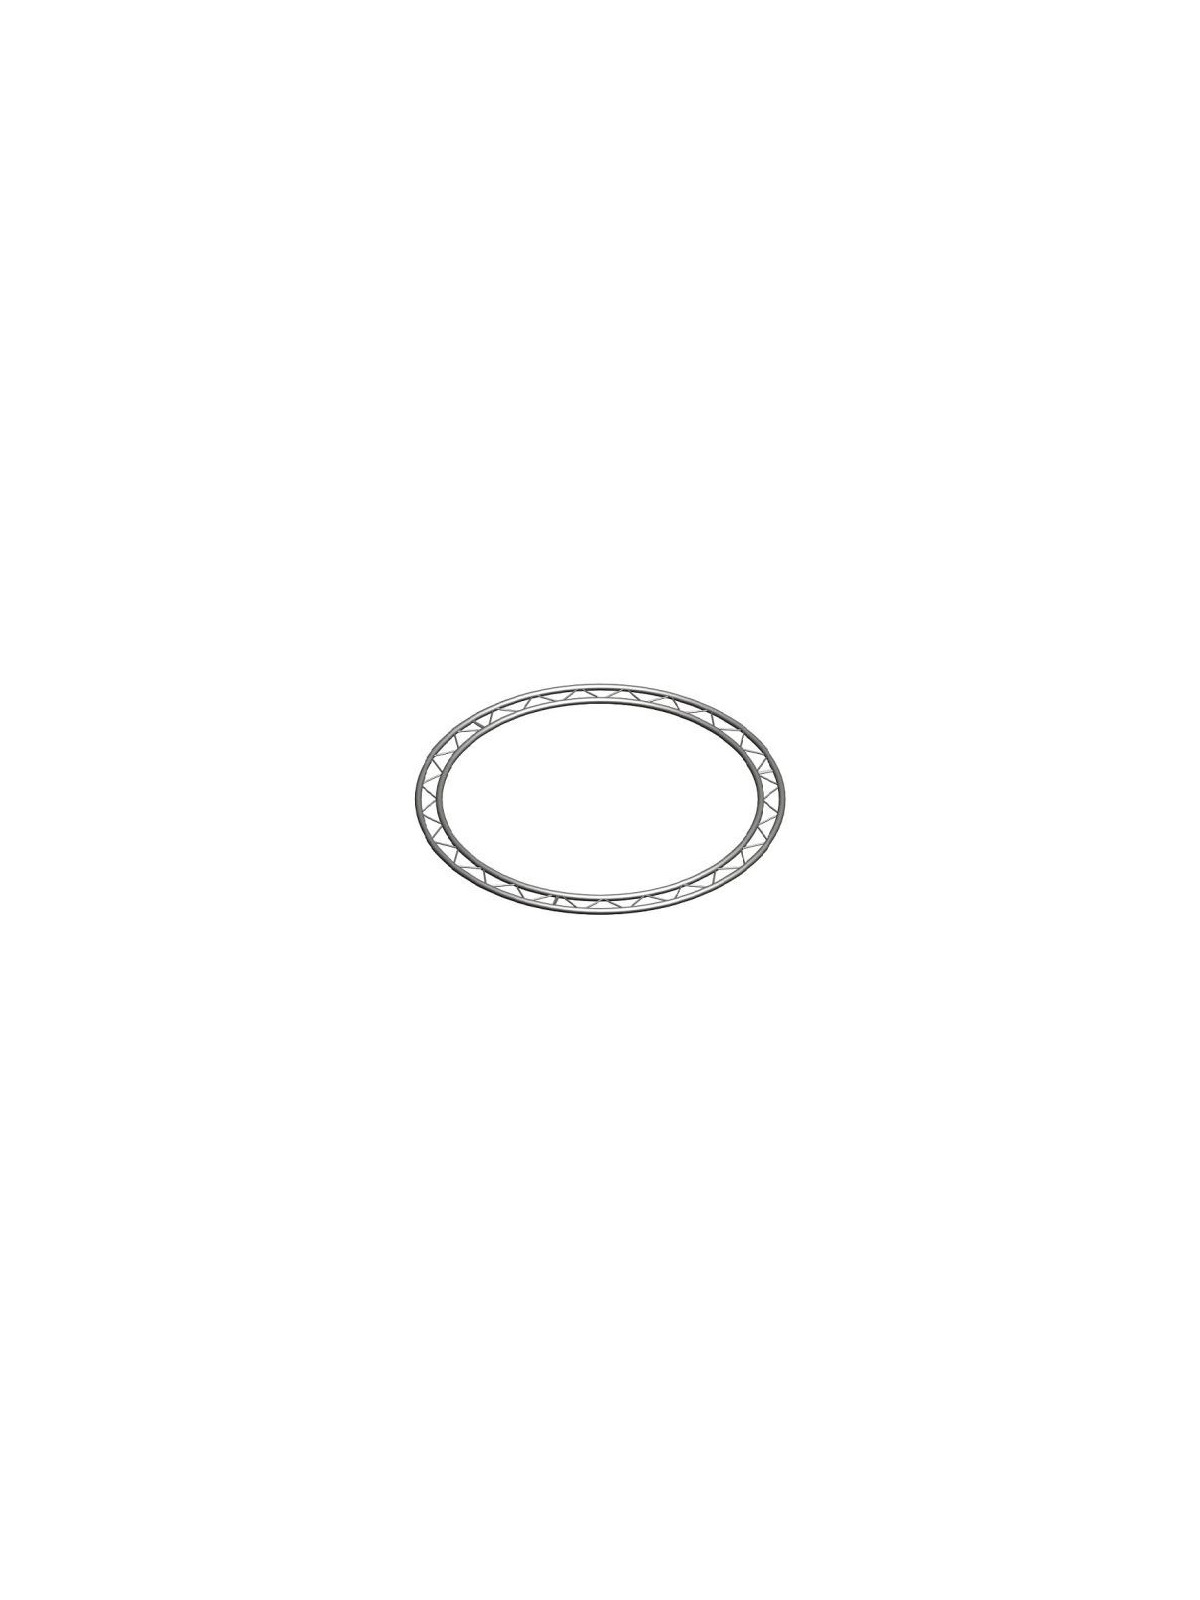 Asd cercle 4.50m Echelle plate 290